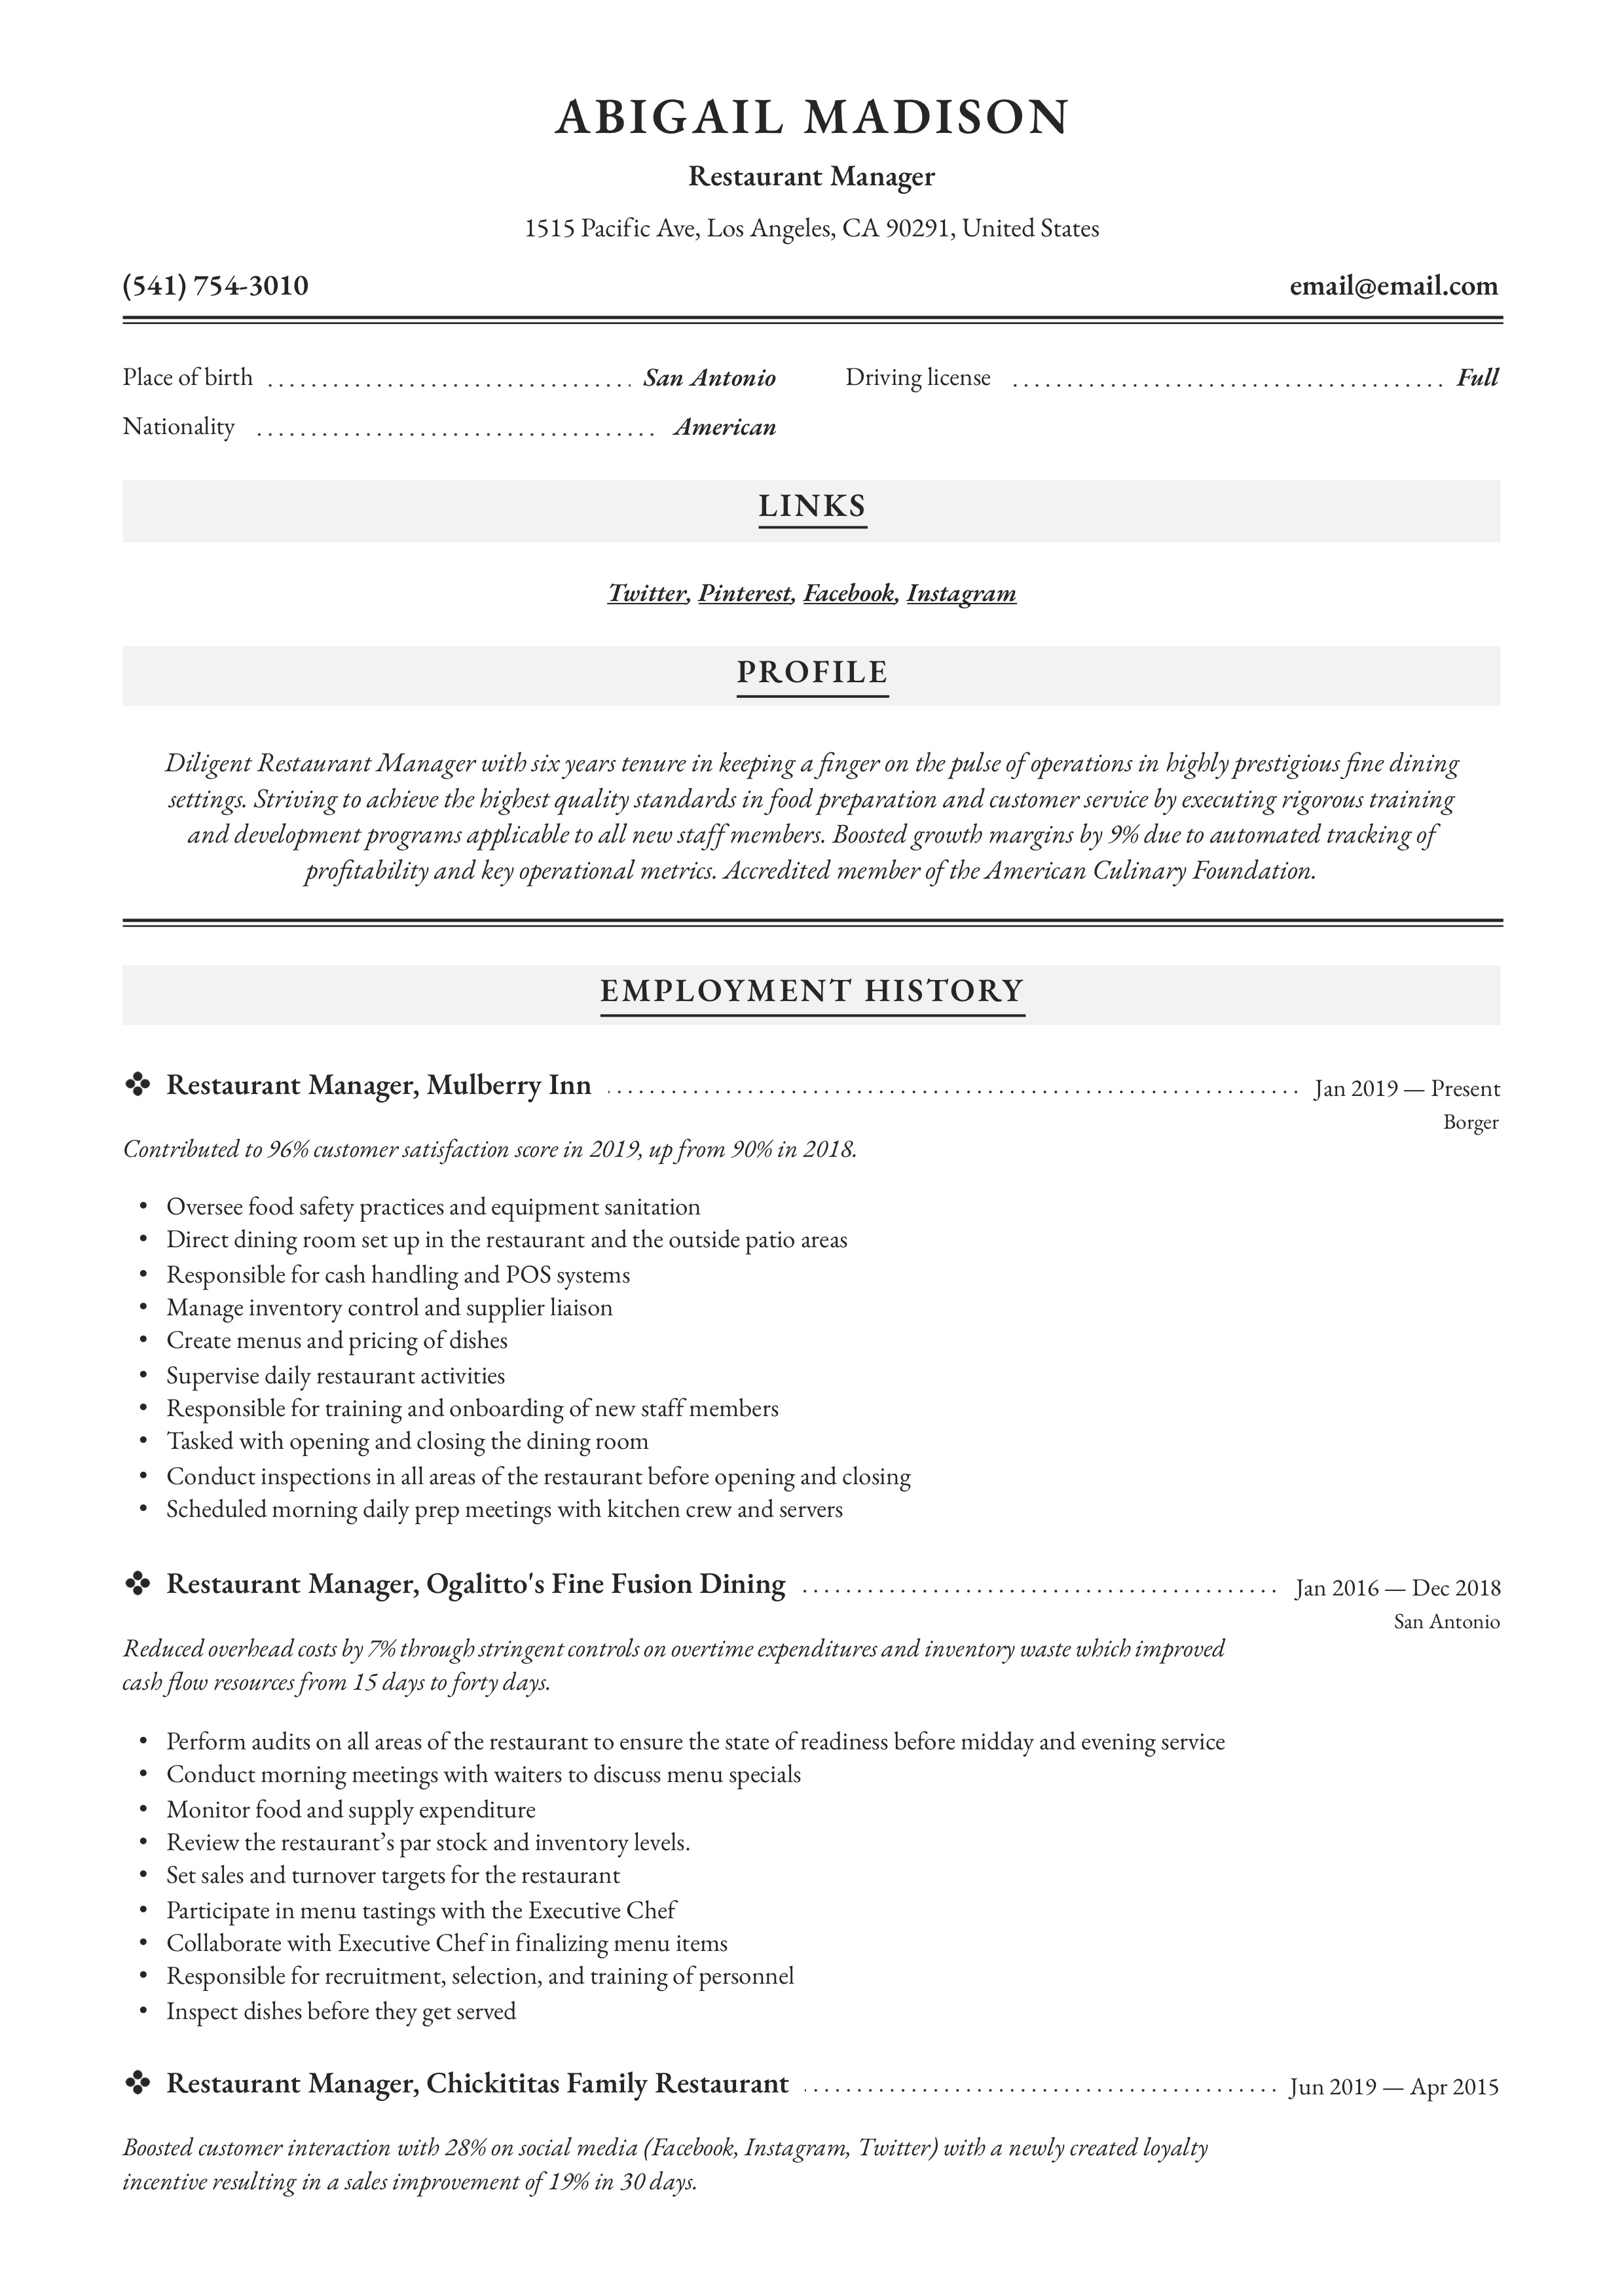 Resume Restaurant manager